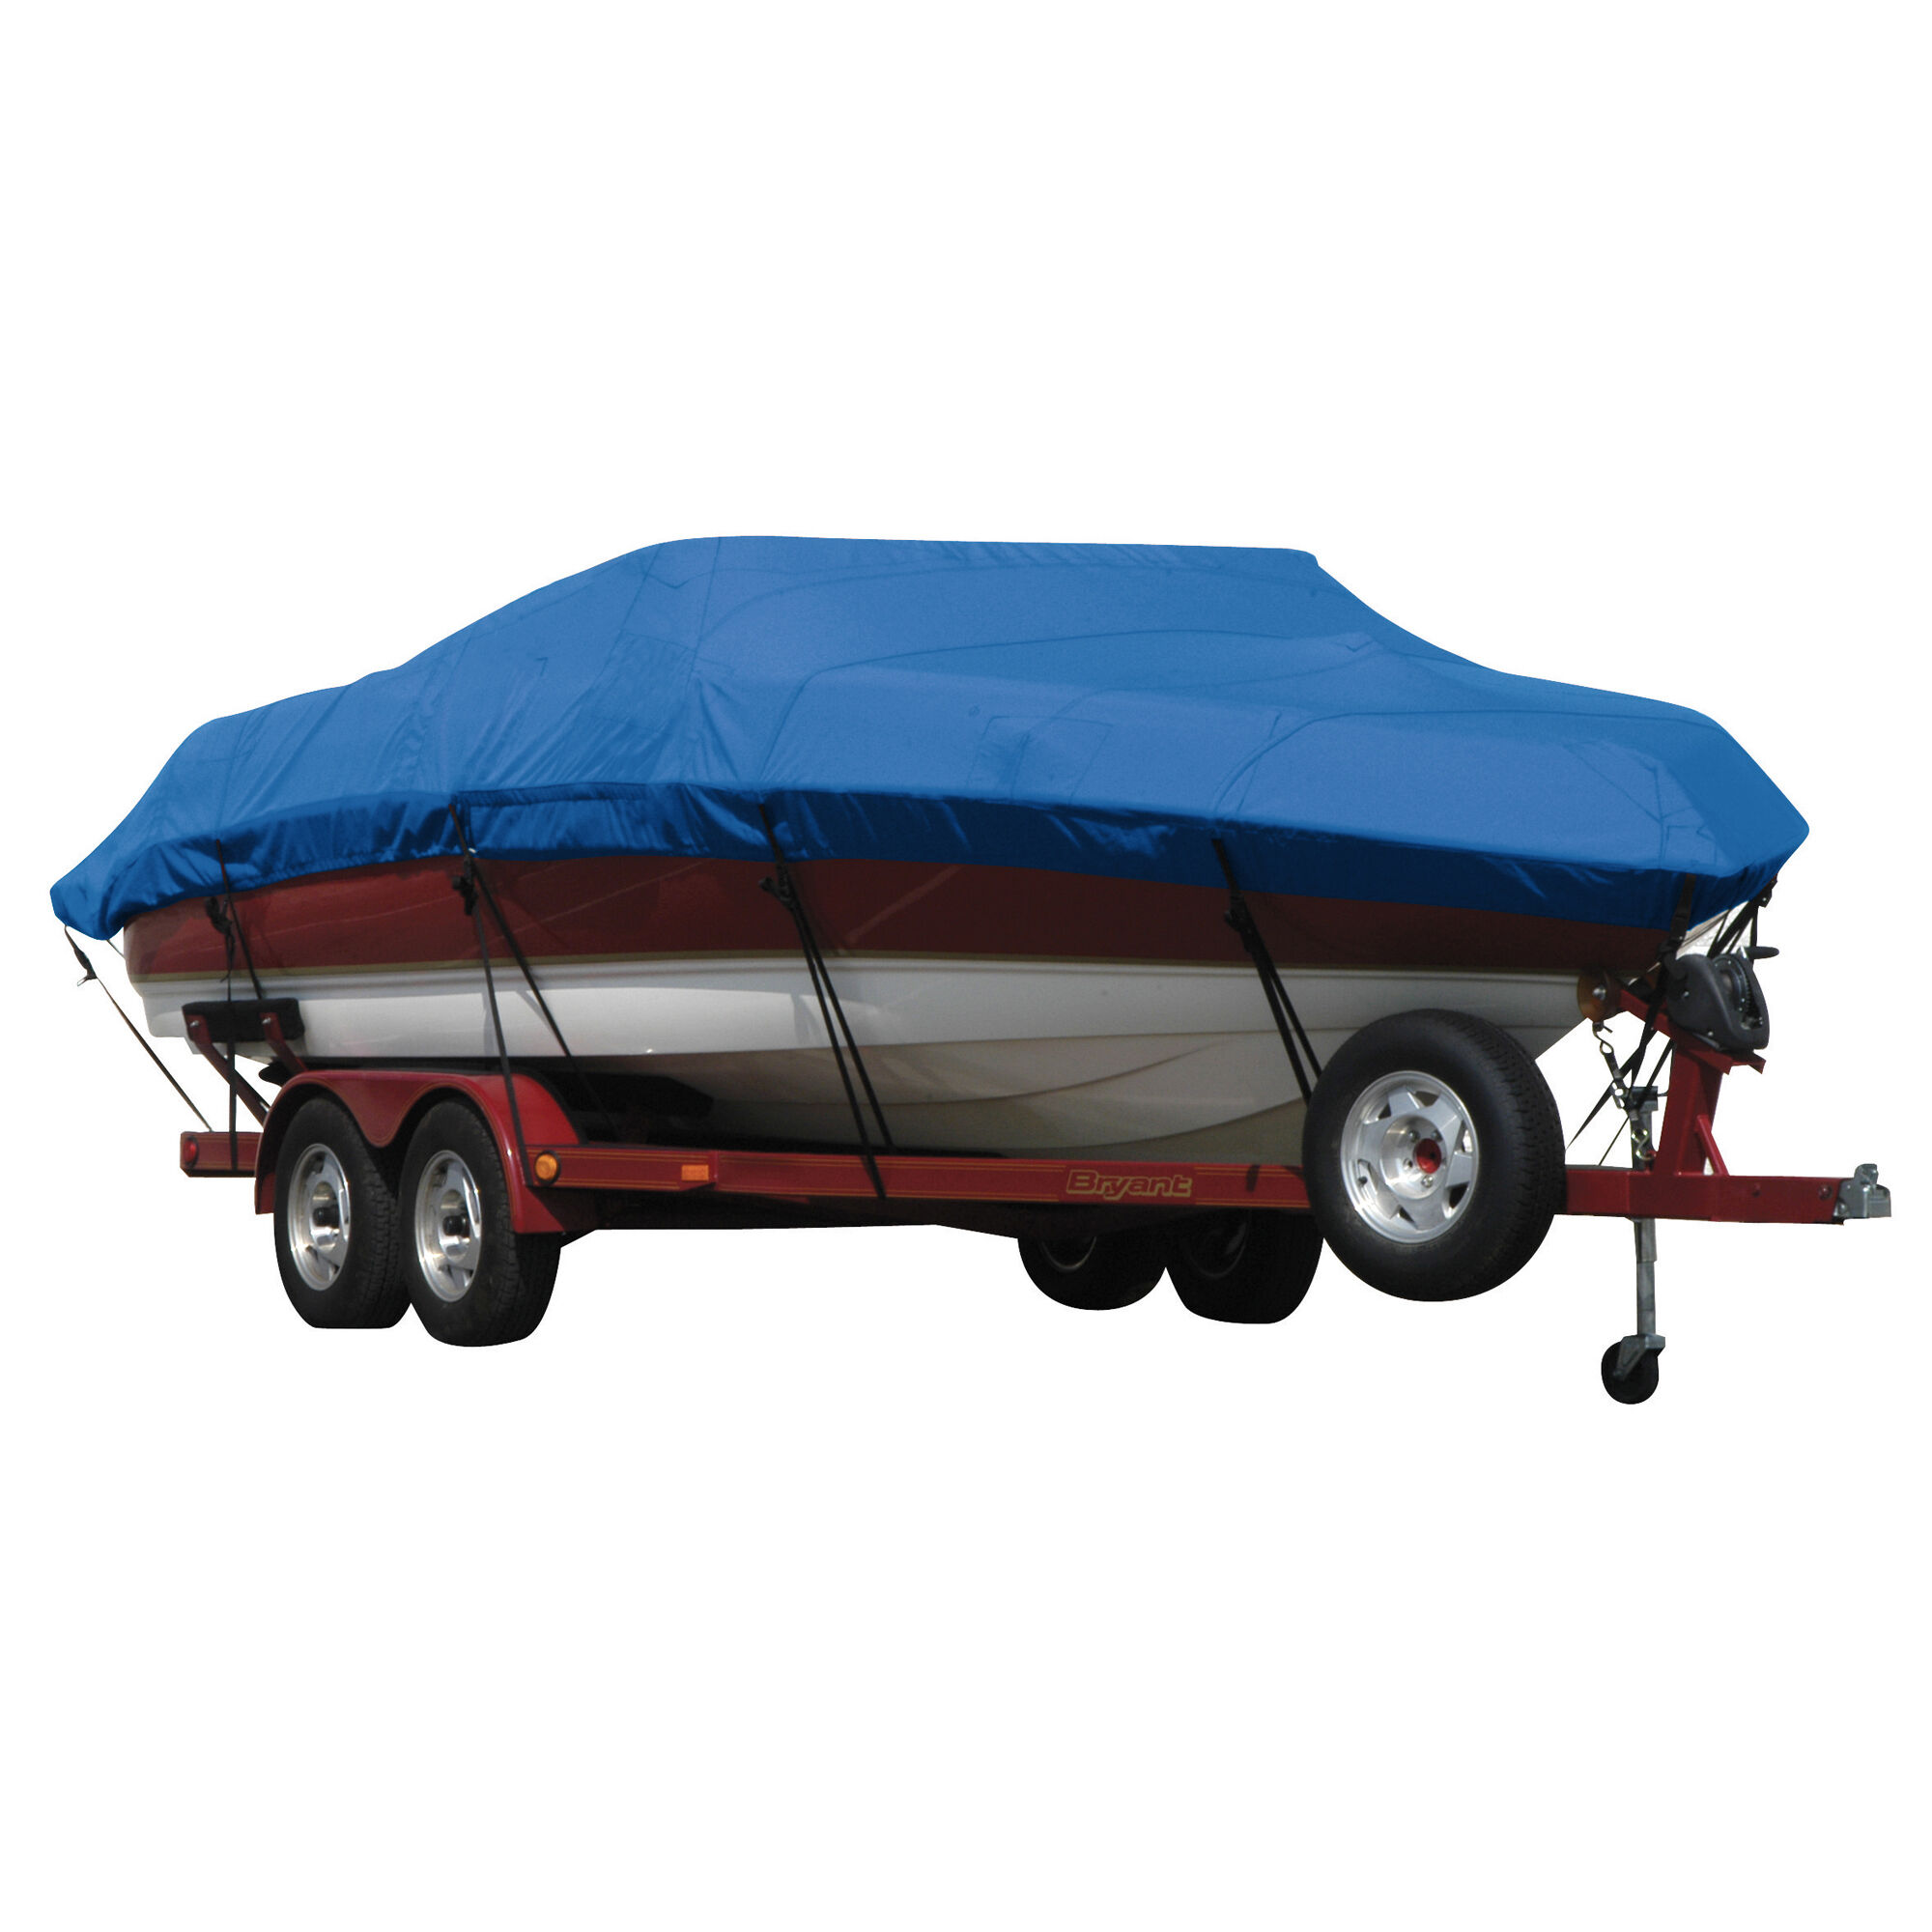 Covermate Exact Fit Sunbrella Boat Cover for Seaswirl Striper 2150 Striper 2150 Walkaround Hard Top I/O. Pacific Blue